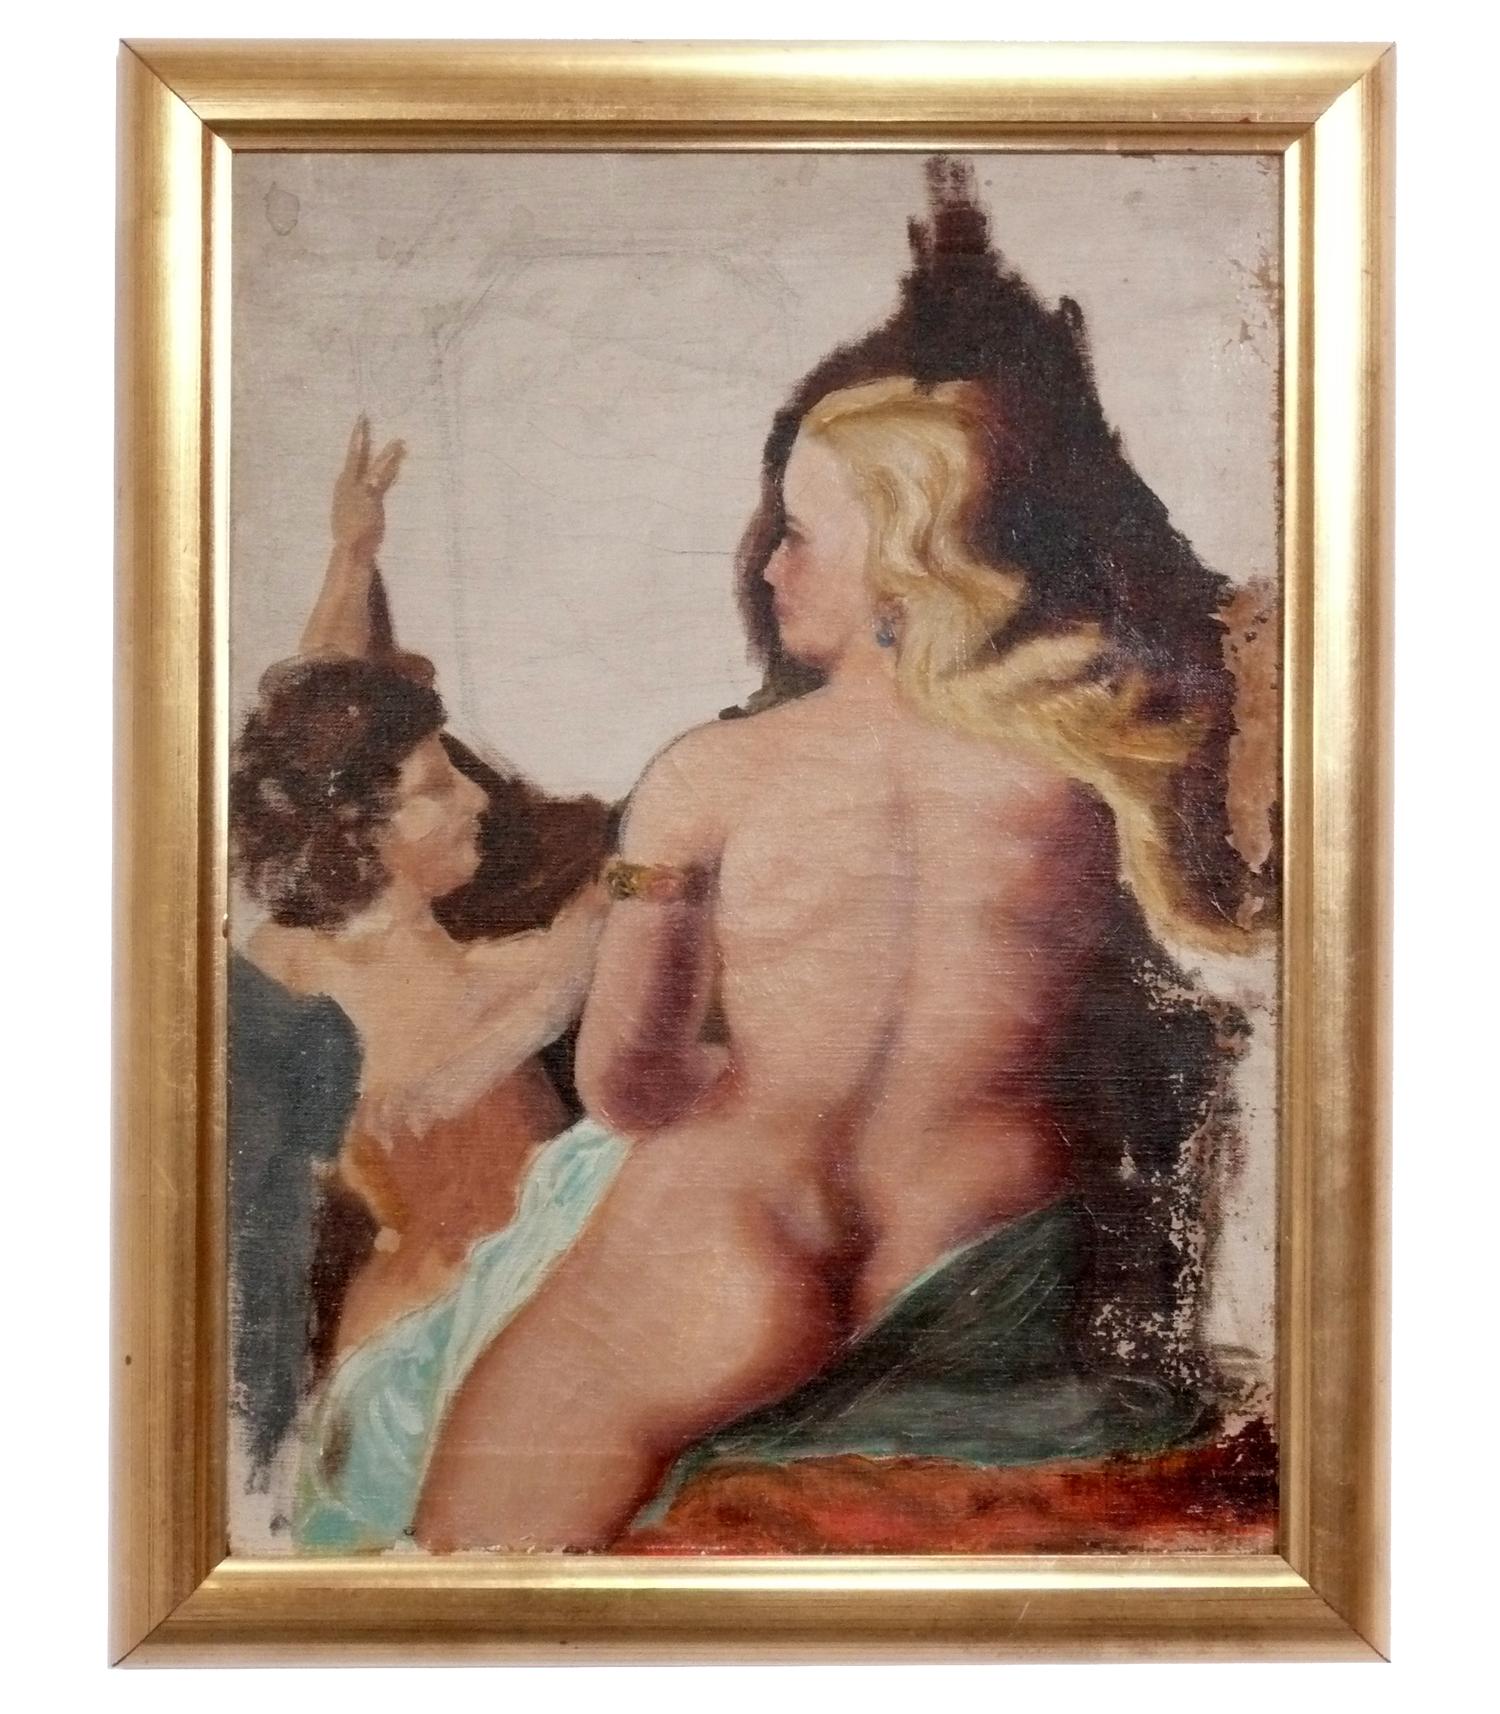 Sélection de peintures originales de nus féminins, probablement américaines, vers les années 1950. Ils sont vendus au prix de 750 dollars chacun. Aucune des deux œuvres n'est signée. Elles ont toutes deux été encadrées professionnellement dans des